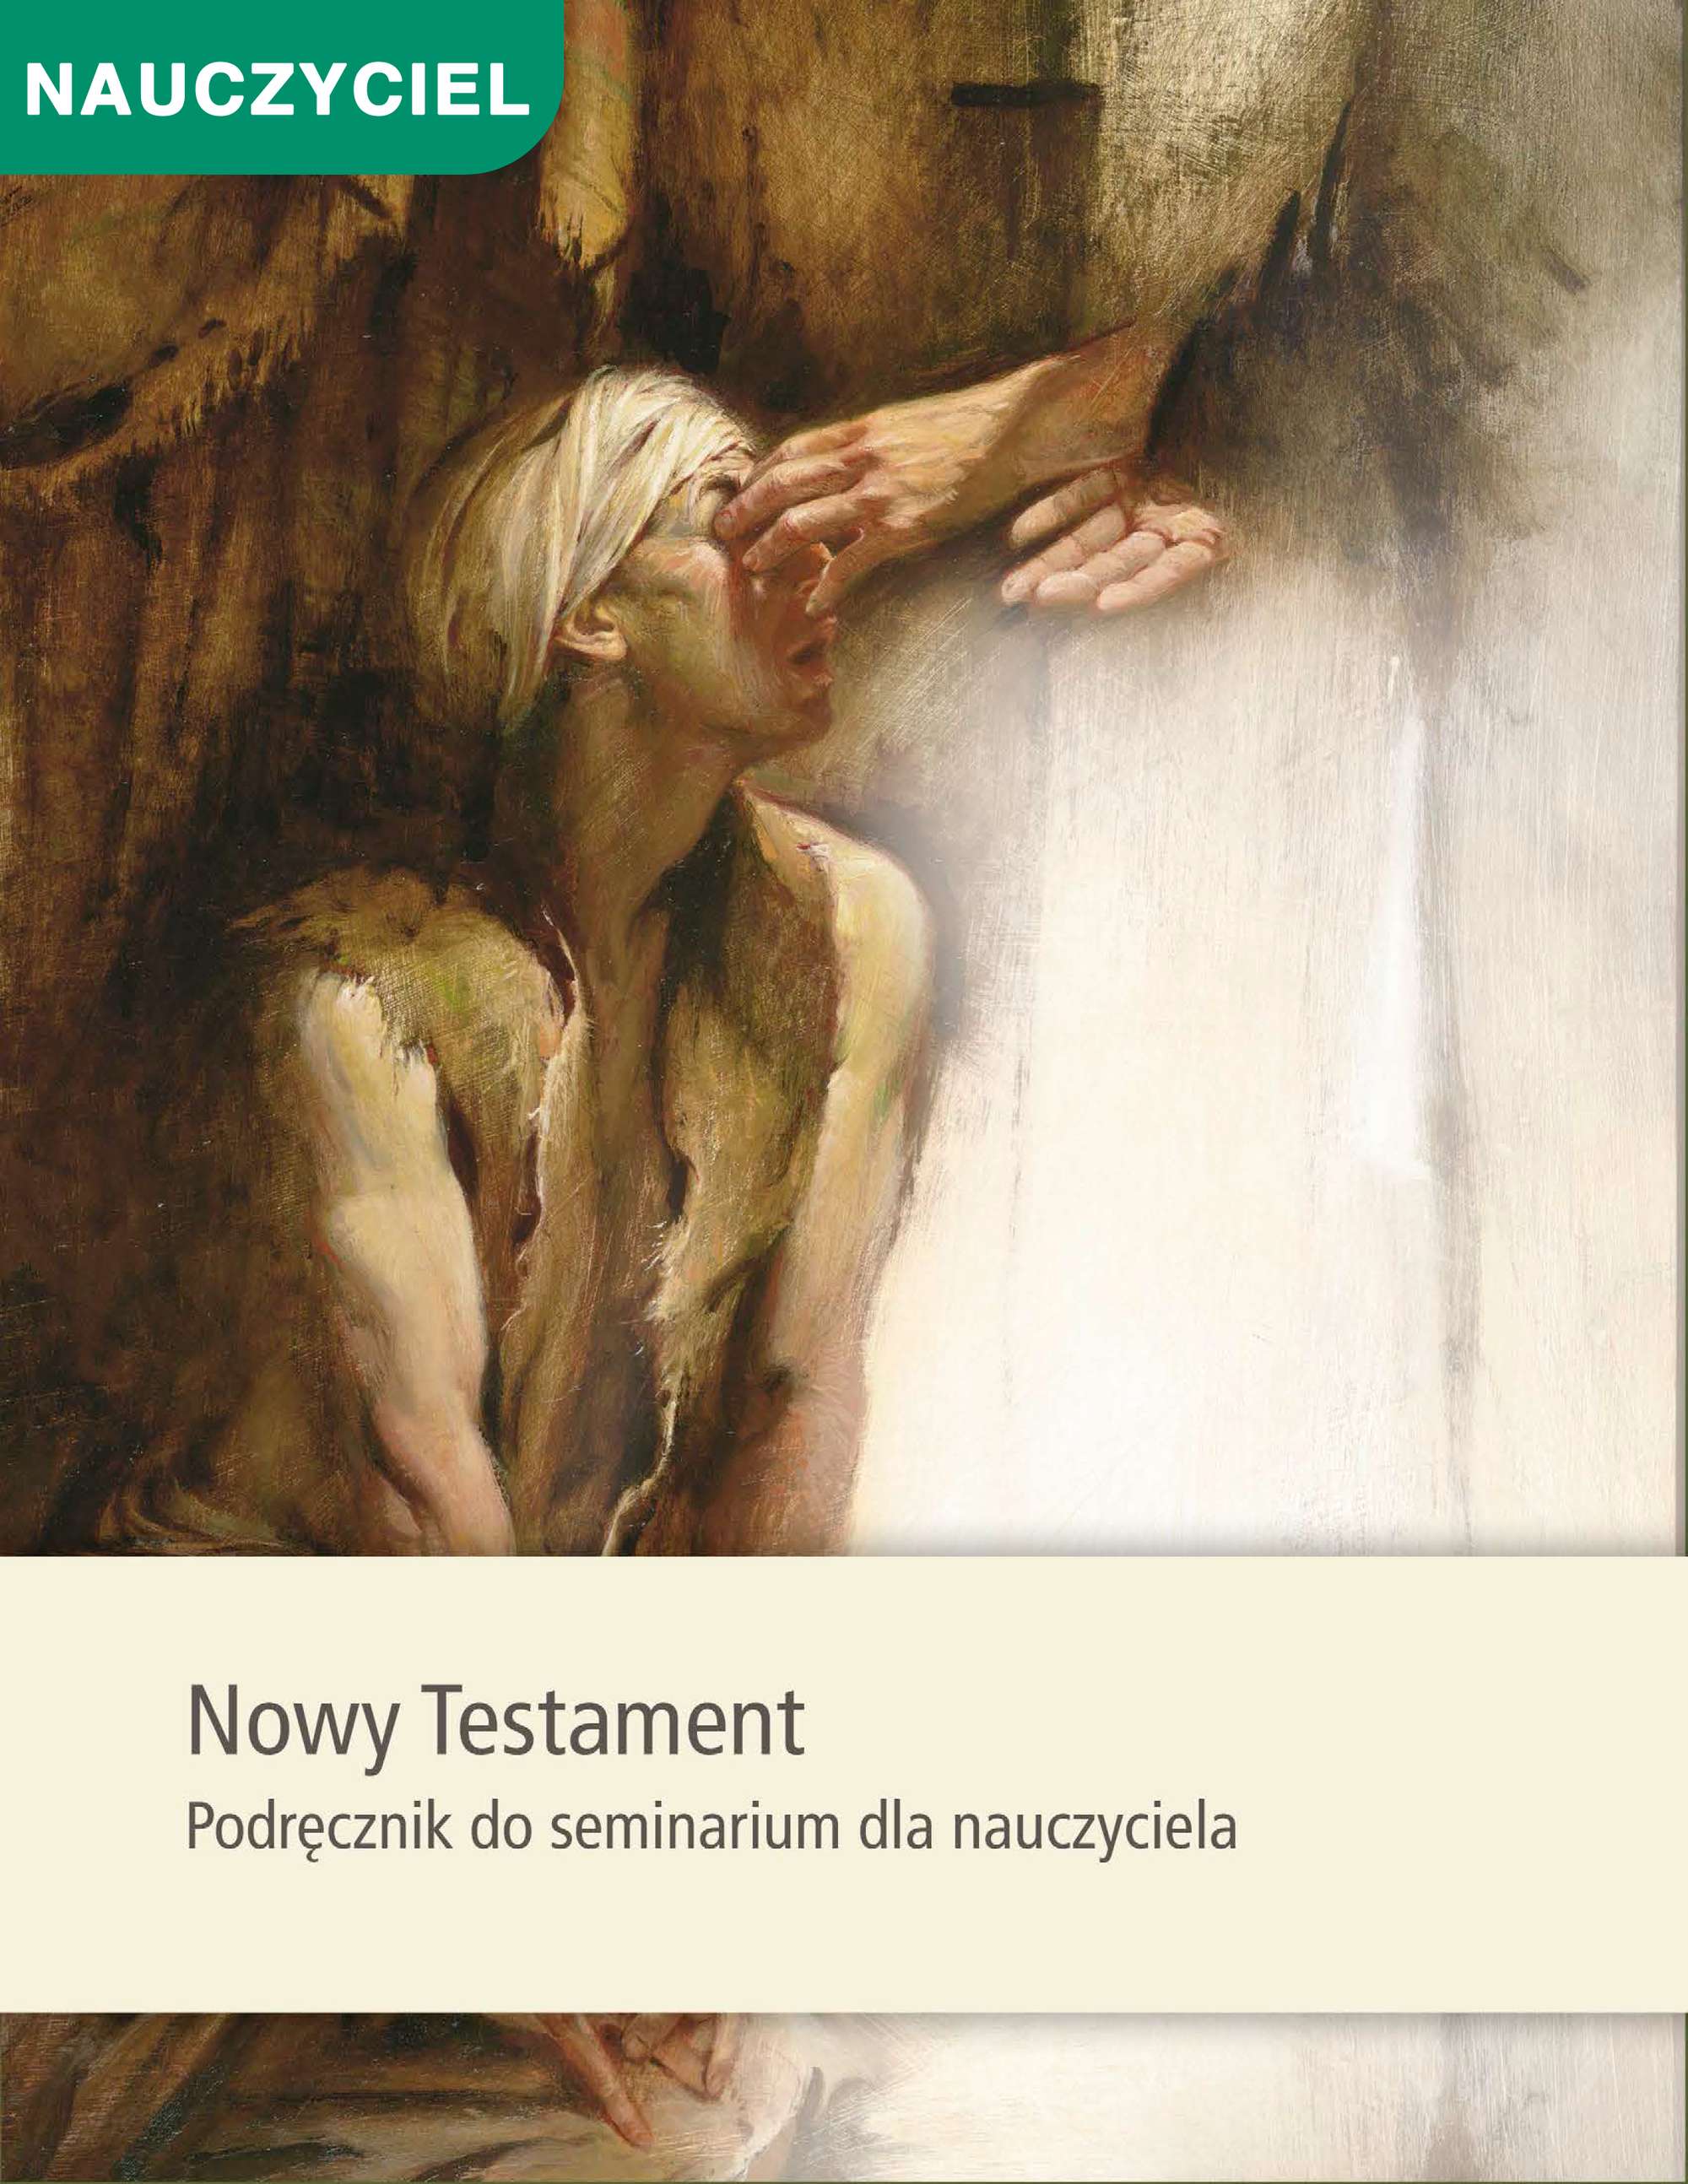 Nowy Testament Podręcznik dla nauczyciela seminarium